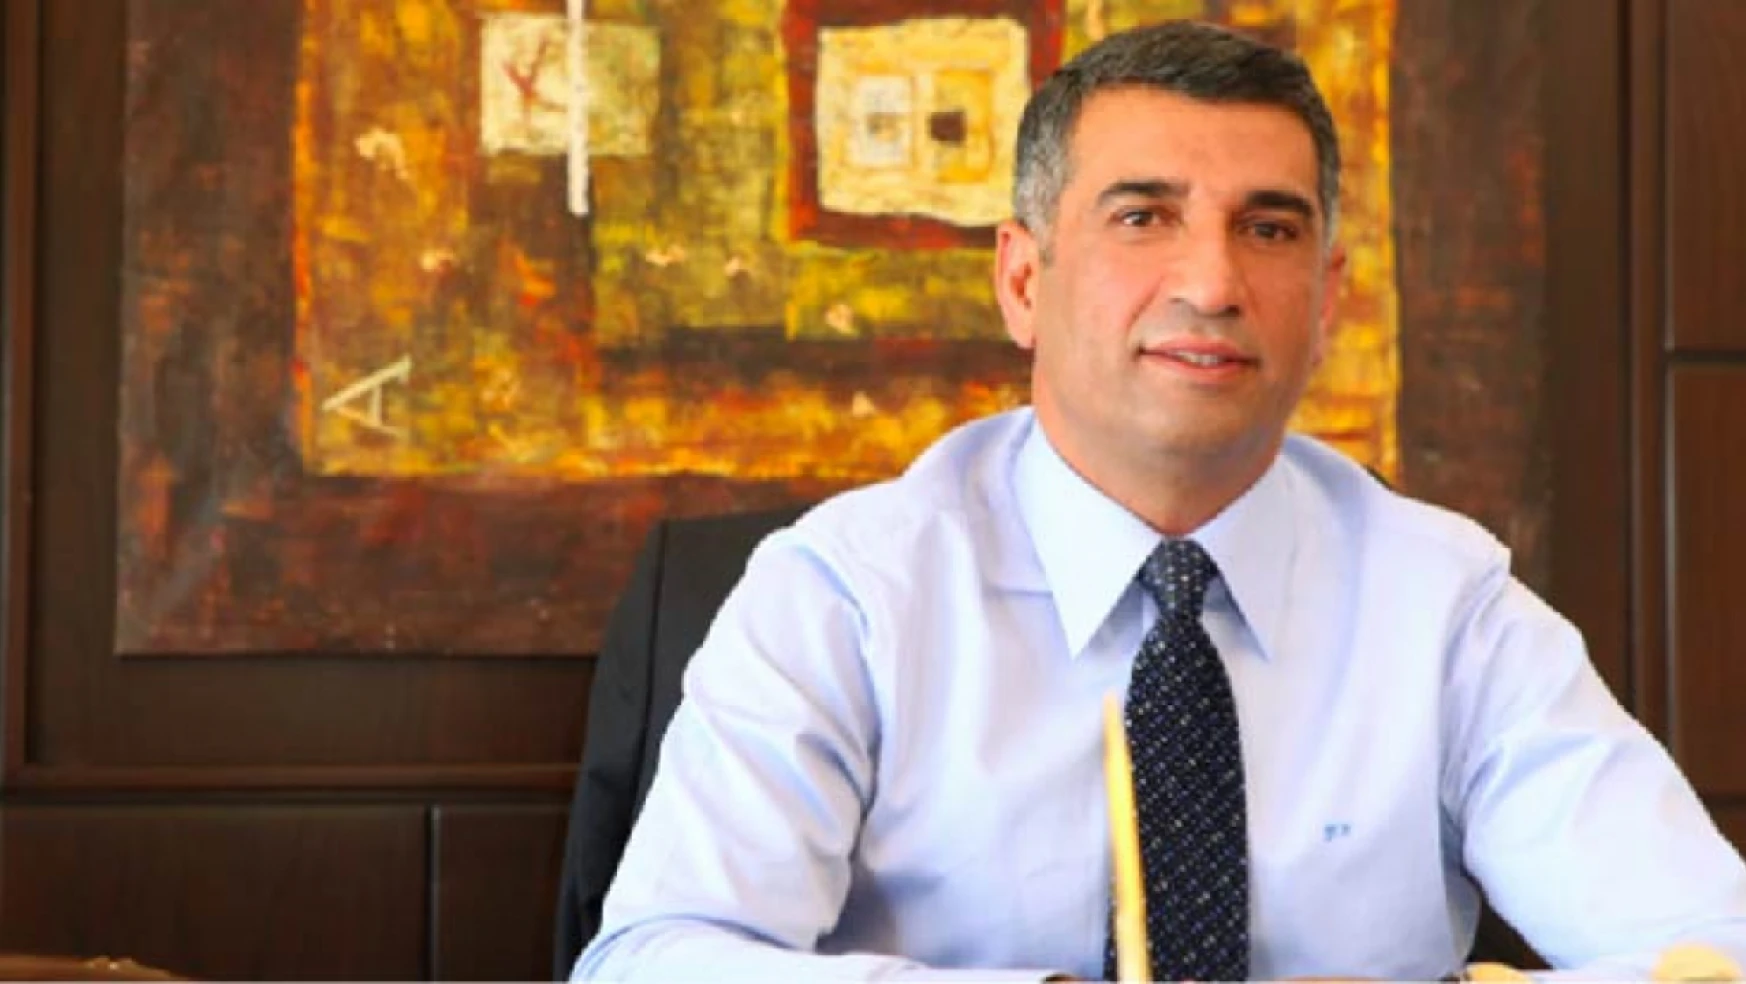 CHP Milletvekili Erol'dan Ak Partili Milletvekillerine yönelik önemli iddia: 'muhatap alınmadıklarını ispatlarım'